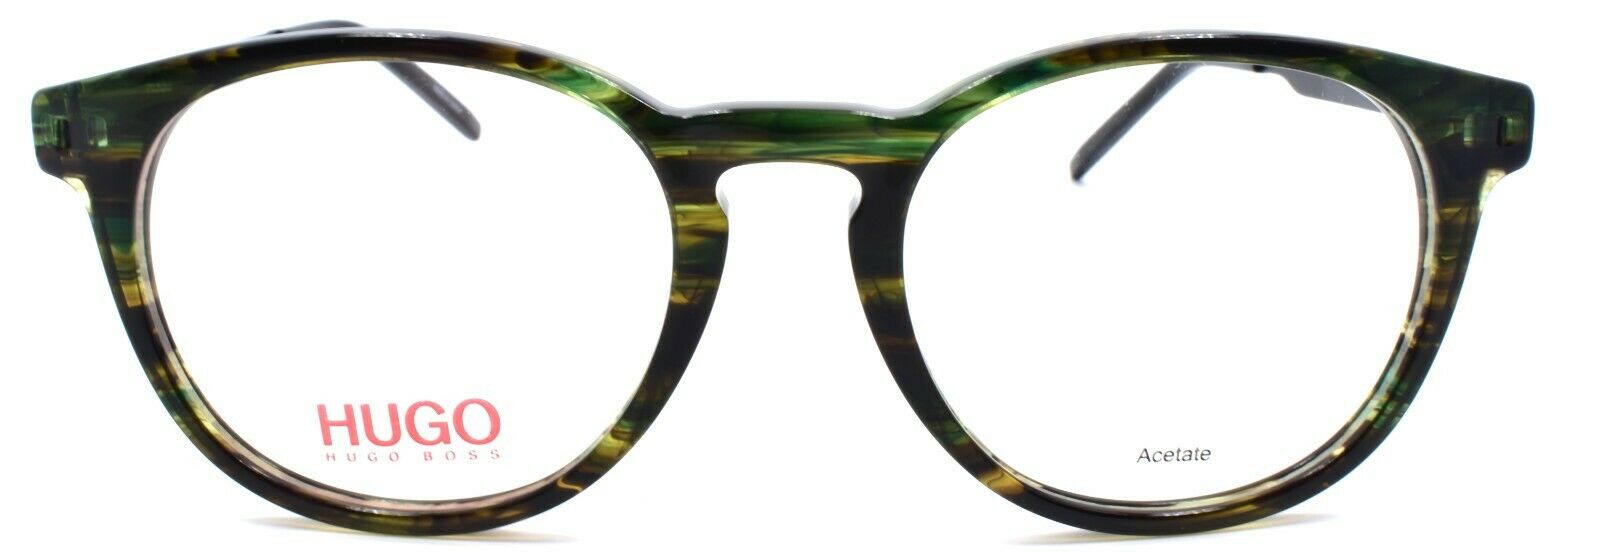 2-Hugo by Hugo Boss HG 1037 6AK Men's Eyeglasses Frames 49-19-150 Green Horn-716736141268-IKSpecs